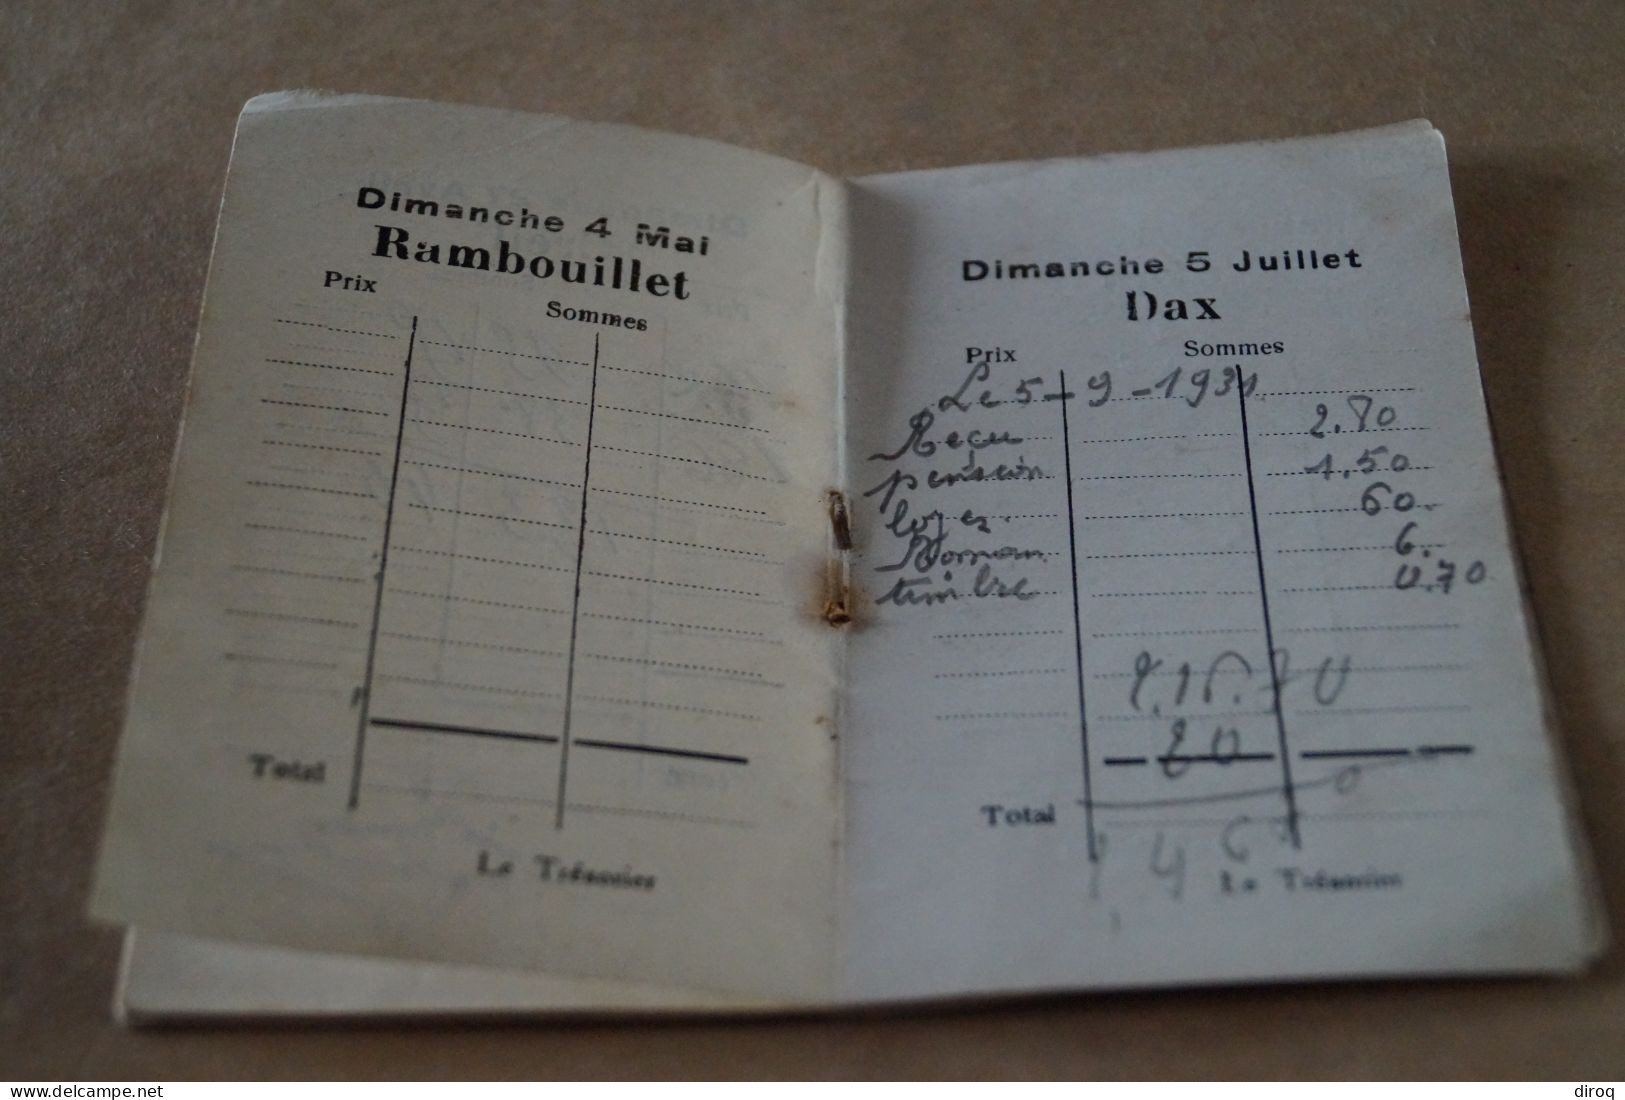 Colombophile,Pigeon,RARE ancien carnet 1930,Bracquegnies,Guichard Emile,20 pages,10 Cm./7 Cm.